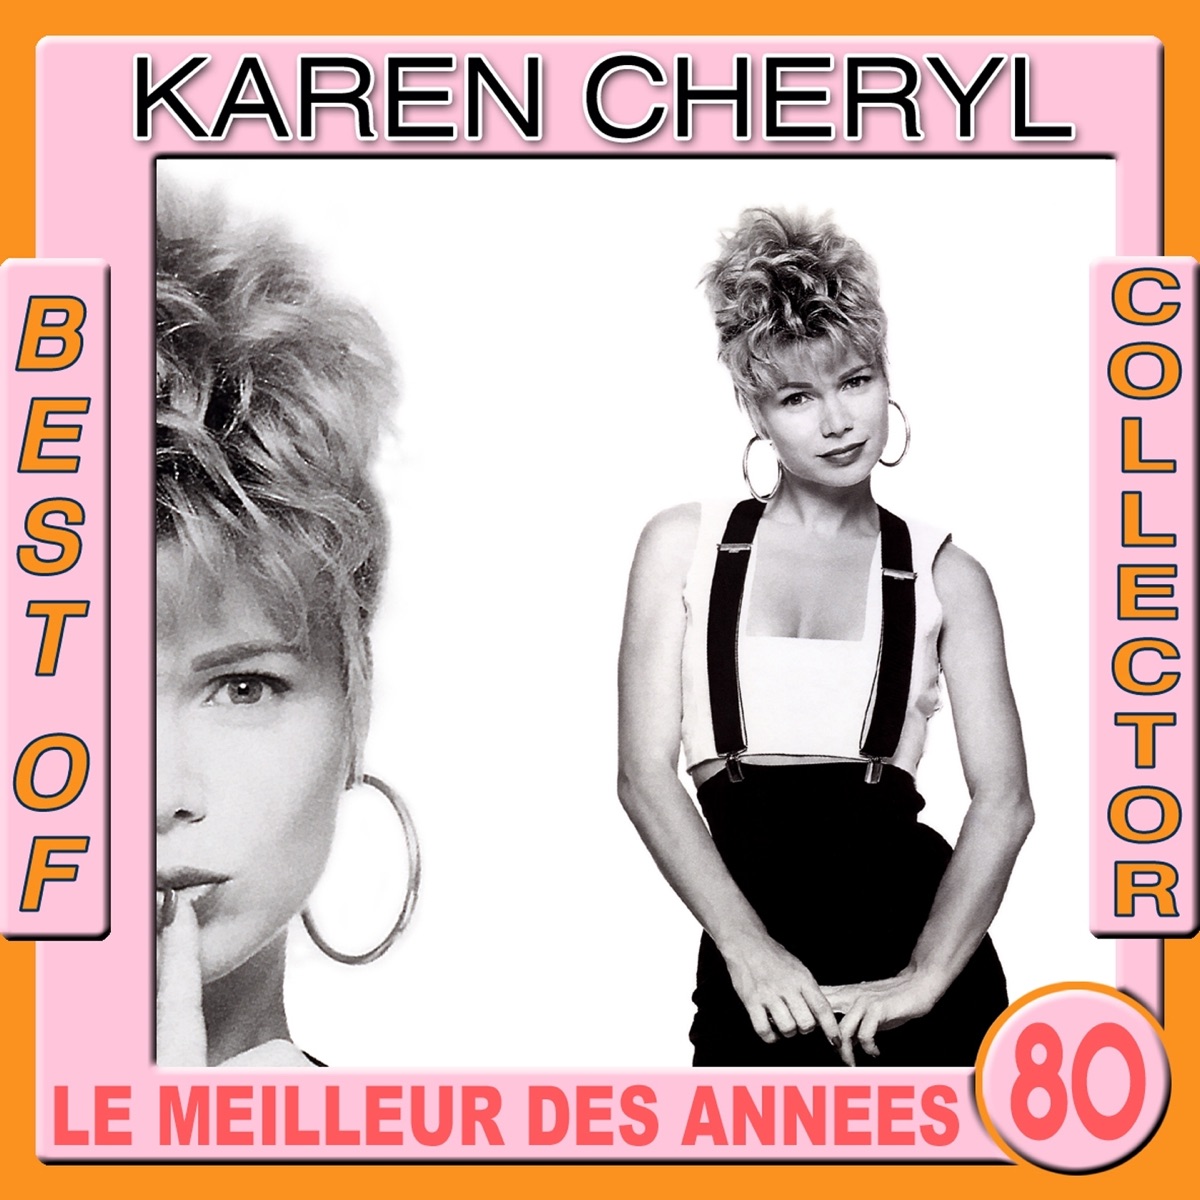 Chanson Francaise Année 80 ♫ Best of Années 80 ♫ Spécial Variété